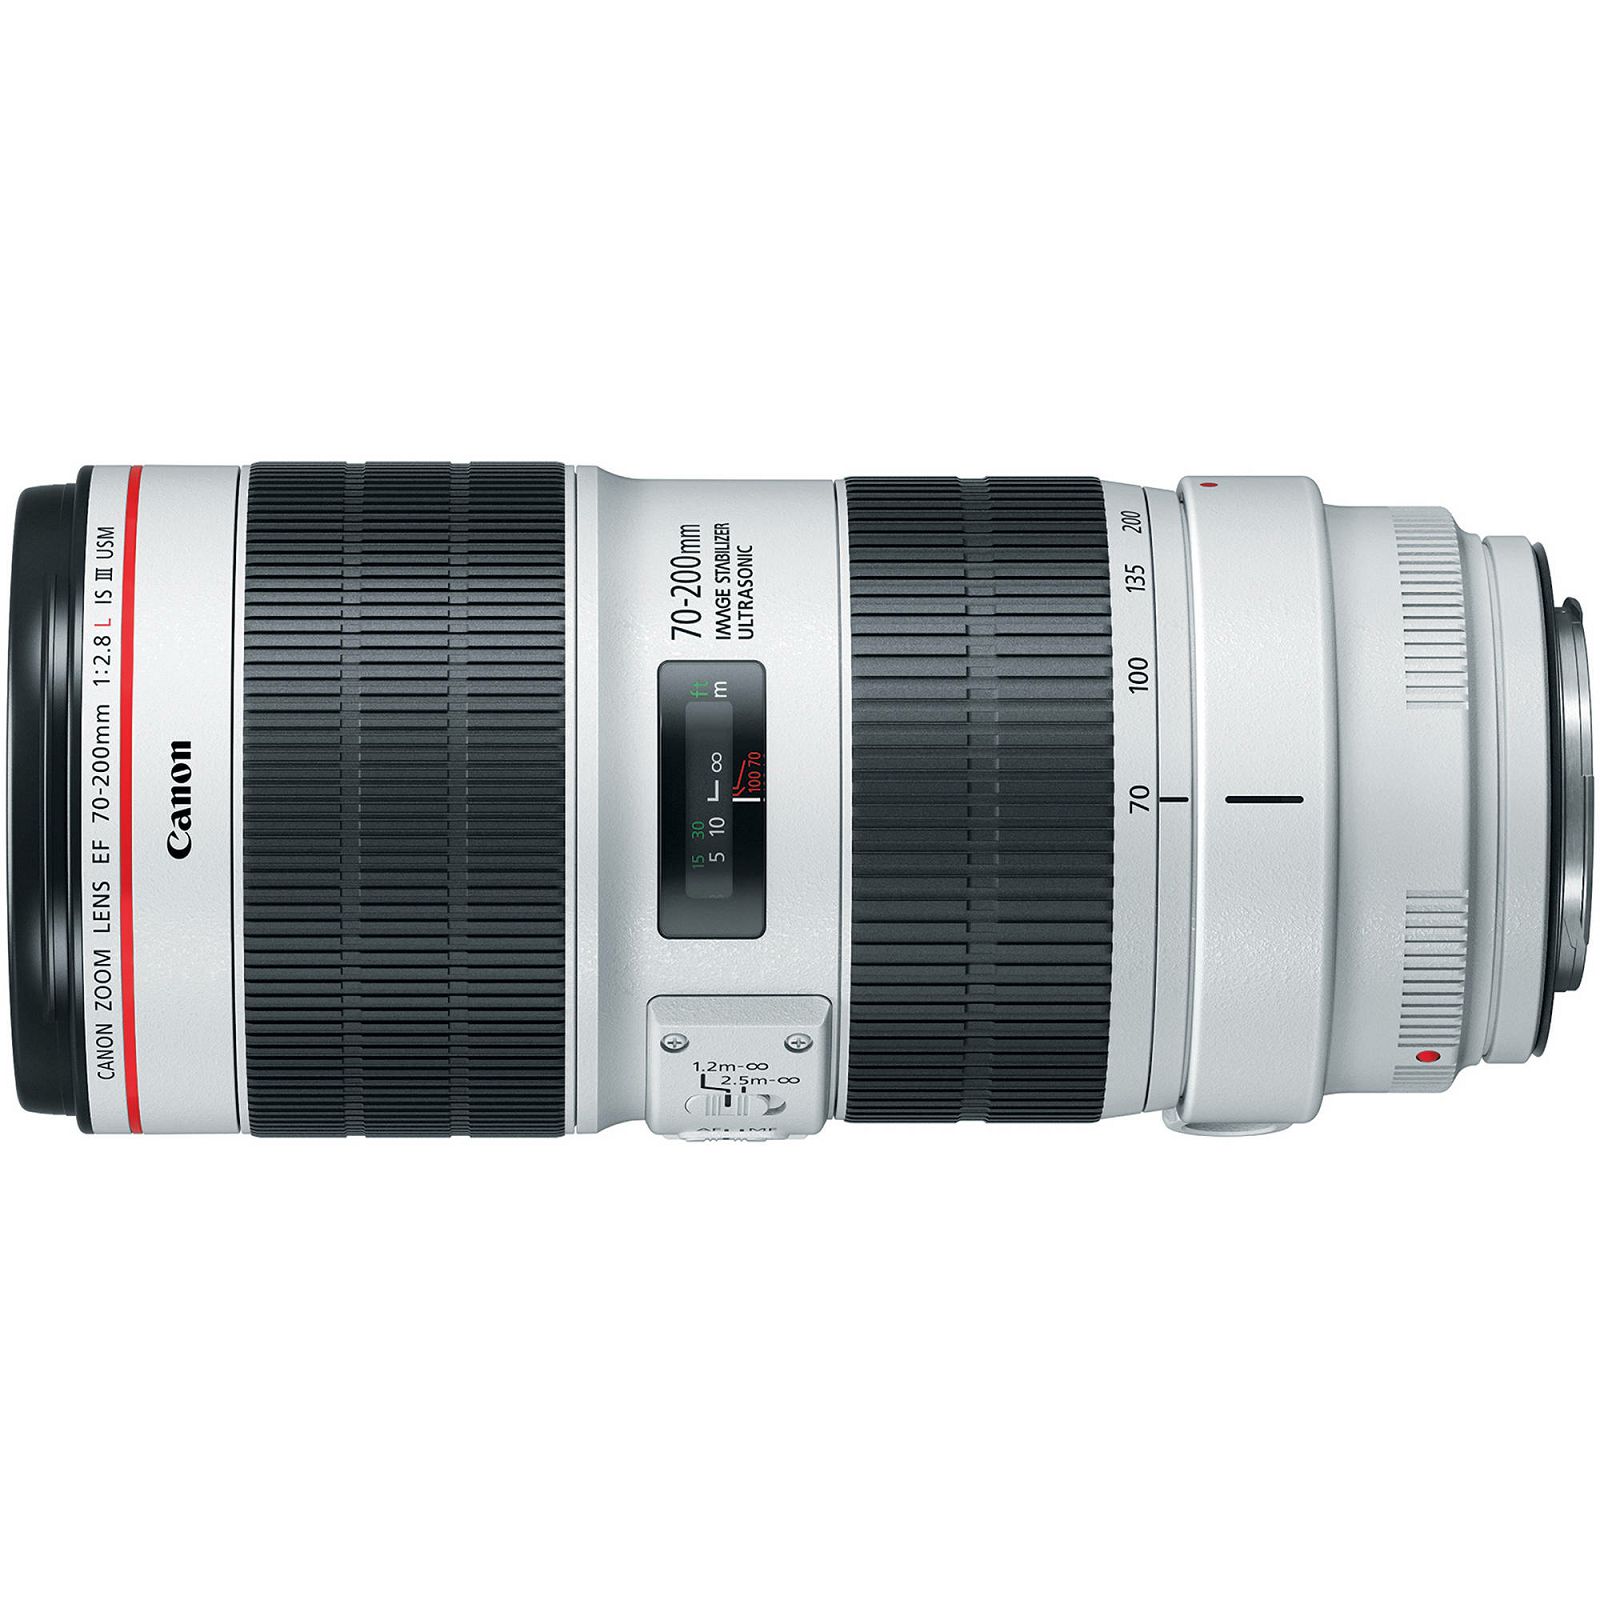 Canon EF 70-200mm f/2.8 L IS III USM telefoto objektiv zoom lens 70-200 f/2.8L F2.8 2.8 1:2,8 (3044C005AA)